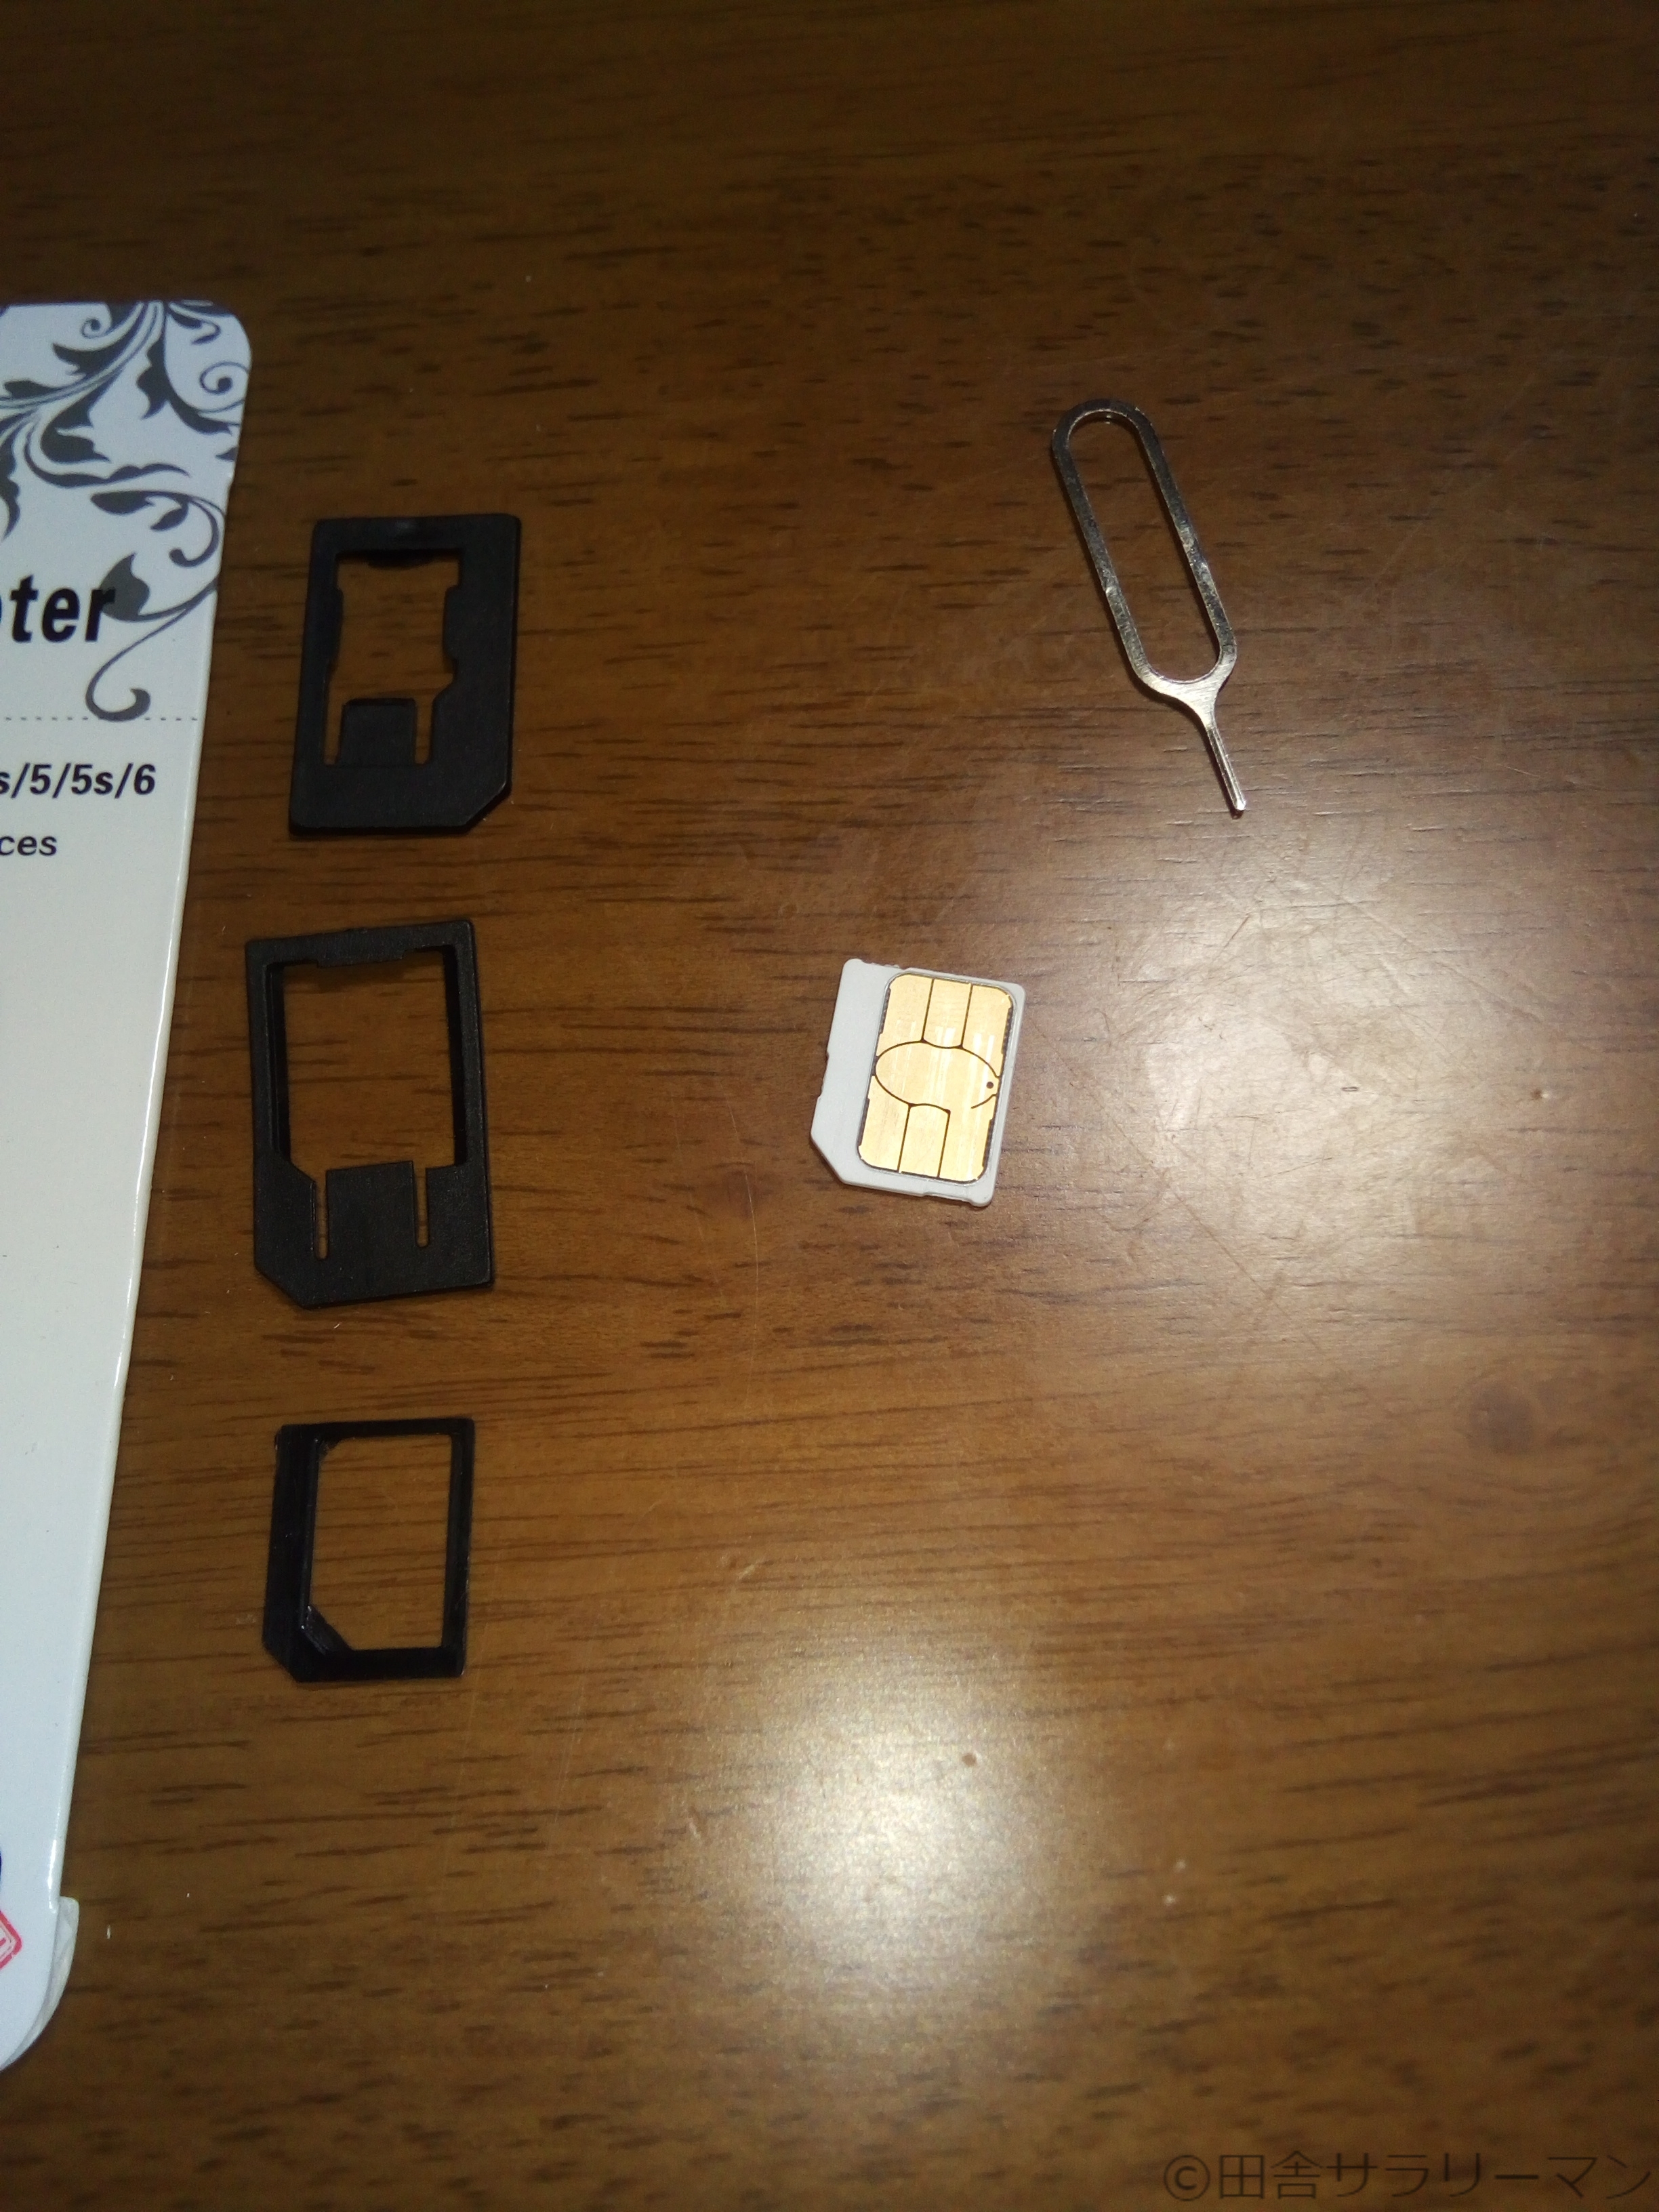 Ocnモバイルoneのsimカードをカットしてみた ユニバーサルホーム施主の田舎サラリーマンブログ